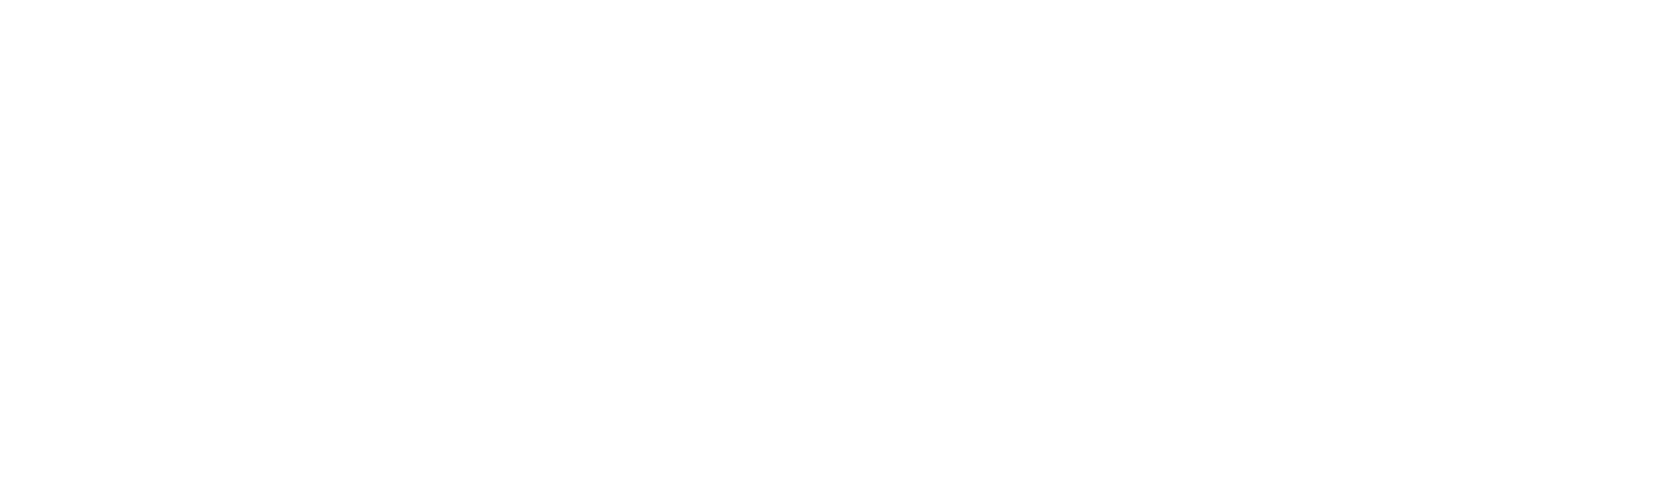 Cassol